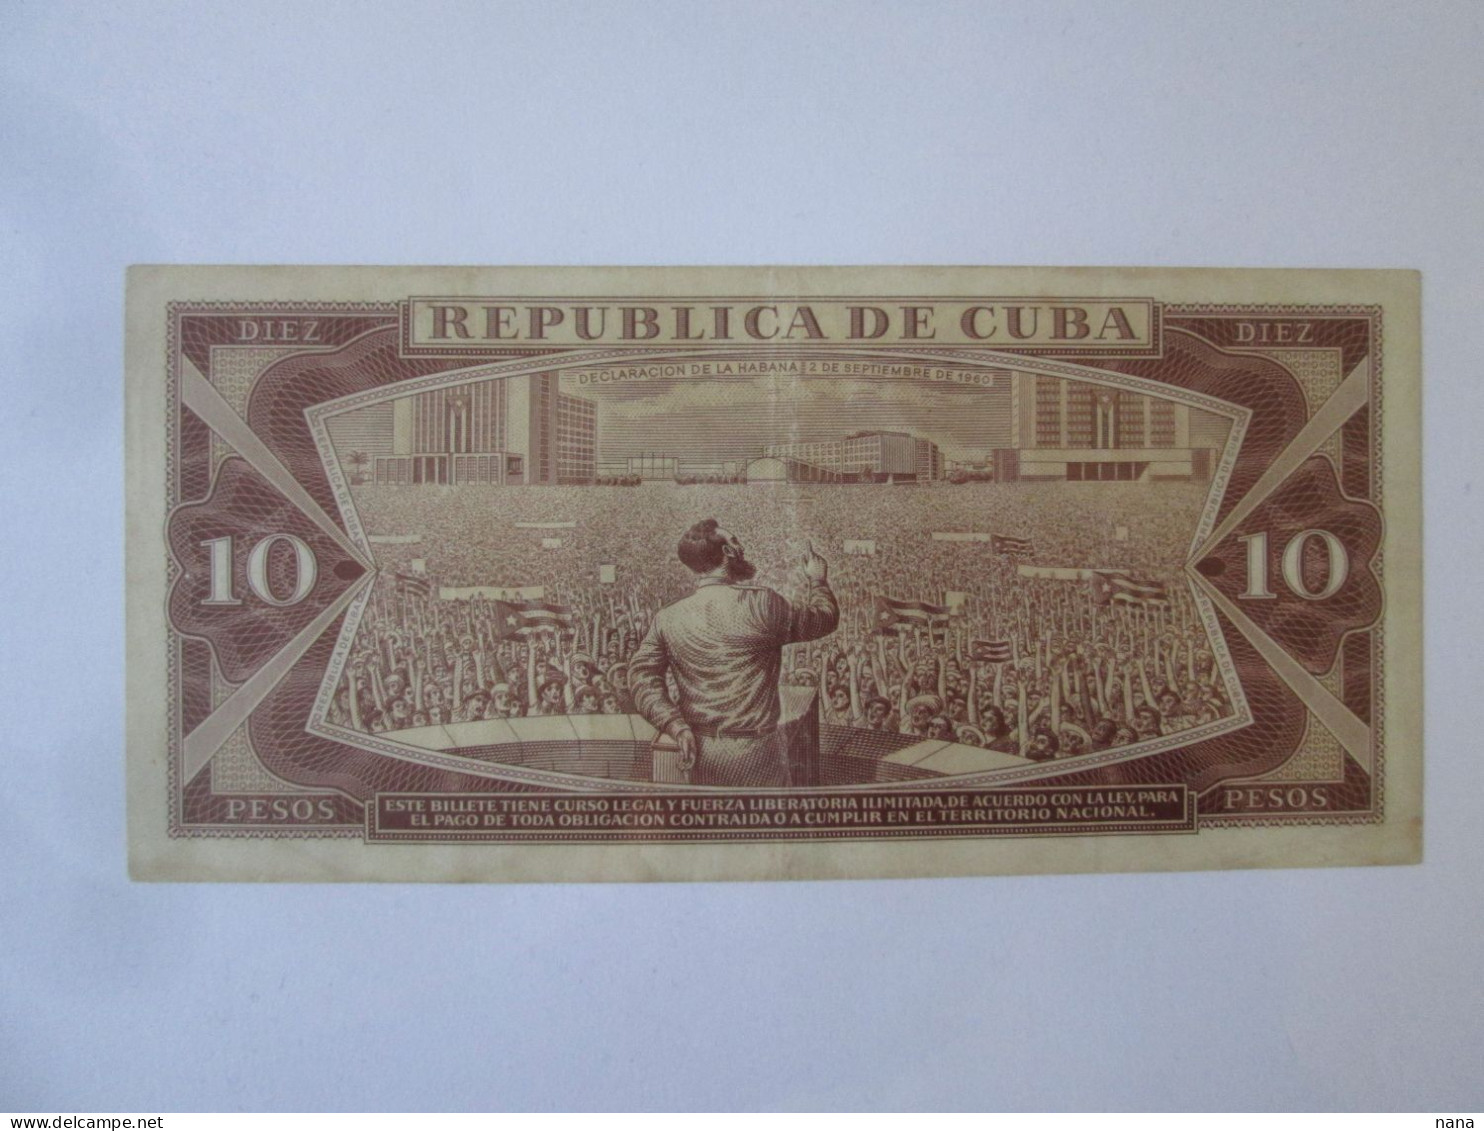 Cuba 10 Pesos 1968 Banknote Maximo Gomez/Fidel Castro,see Pictures - Cuba